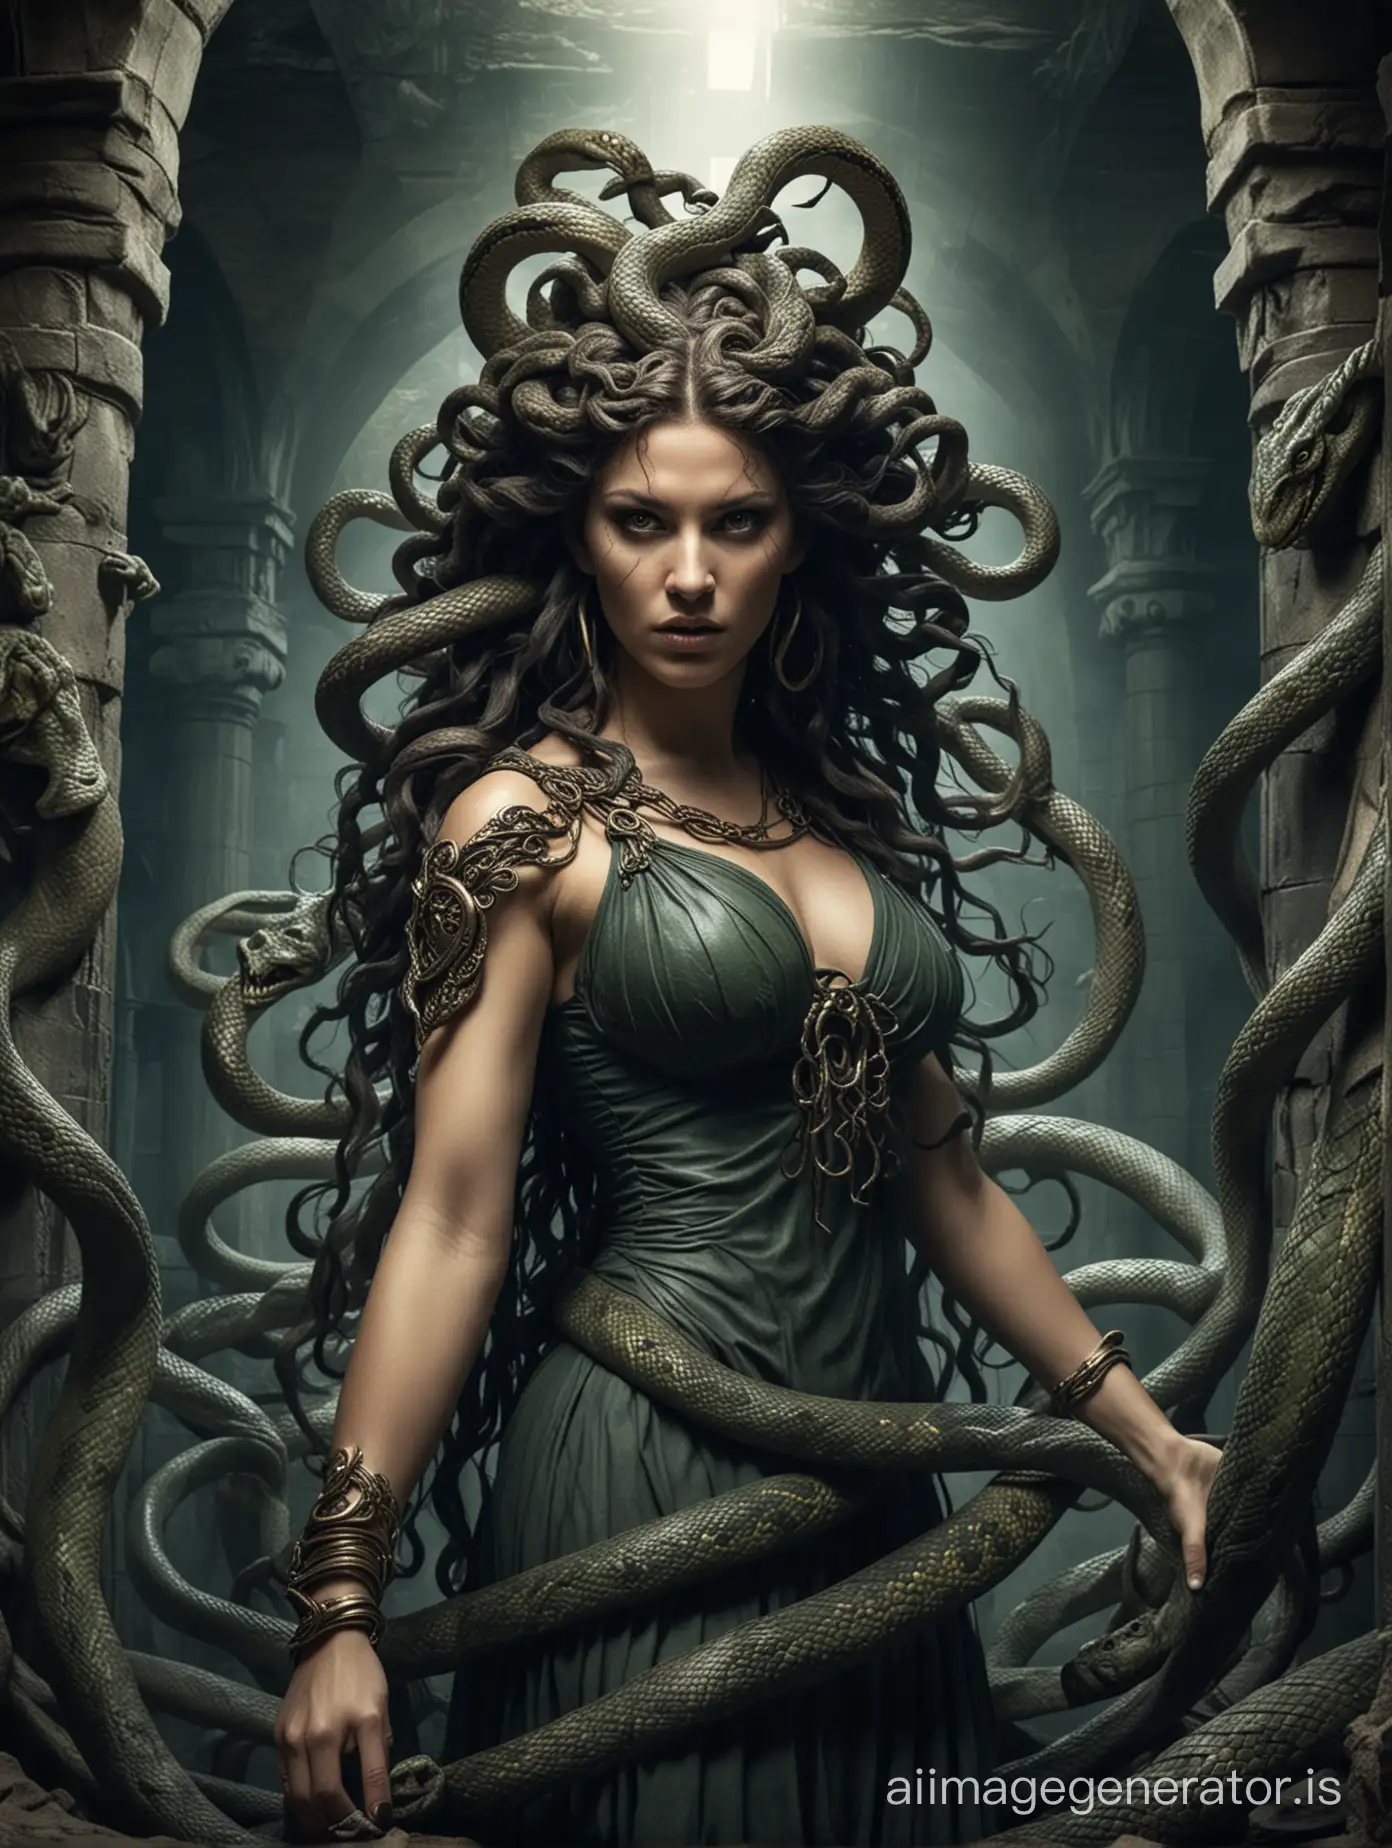 Mythological-Medusa-in-Underground-Dungeon